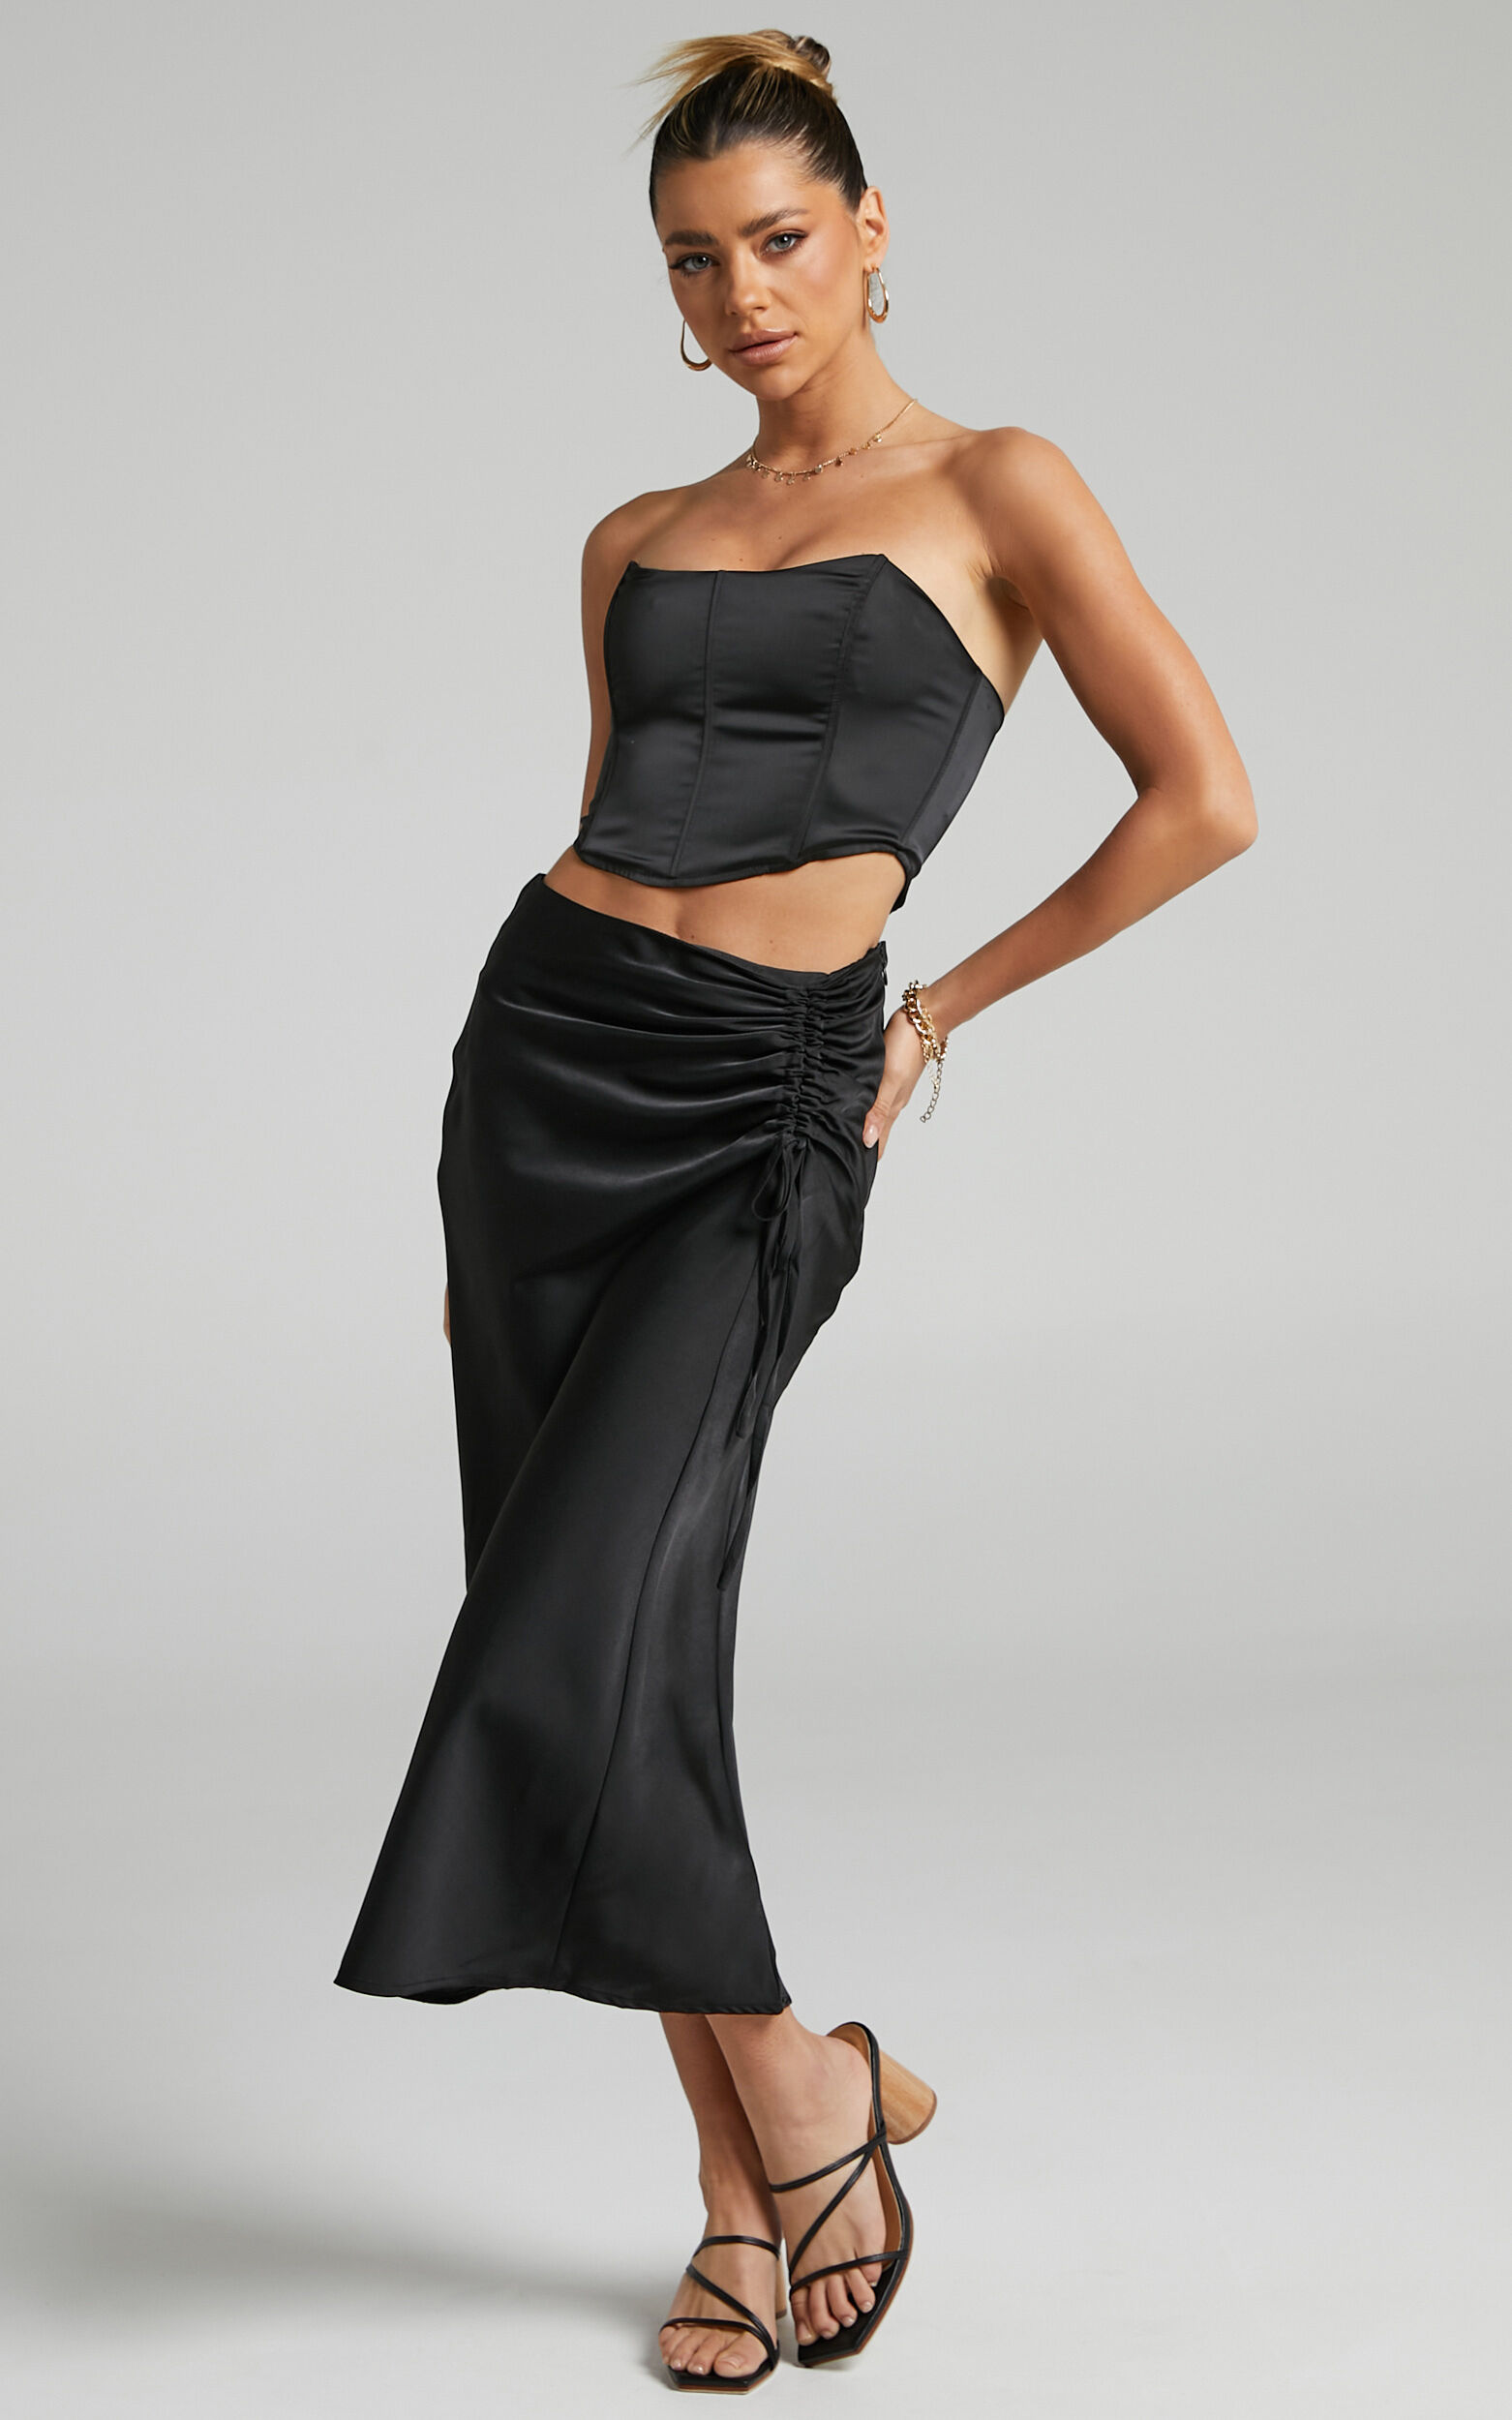 Zaylin Midi Skirt - Ruched Side Satin Slip Skirt in Black - 04, BLK3, super-hi-res image number null